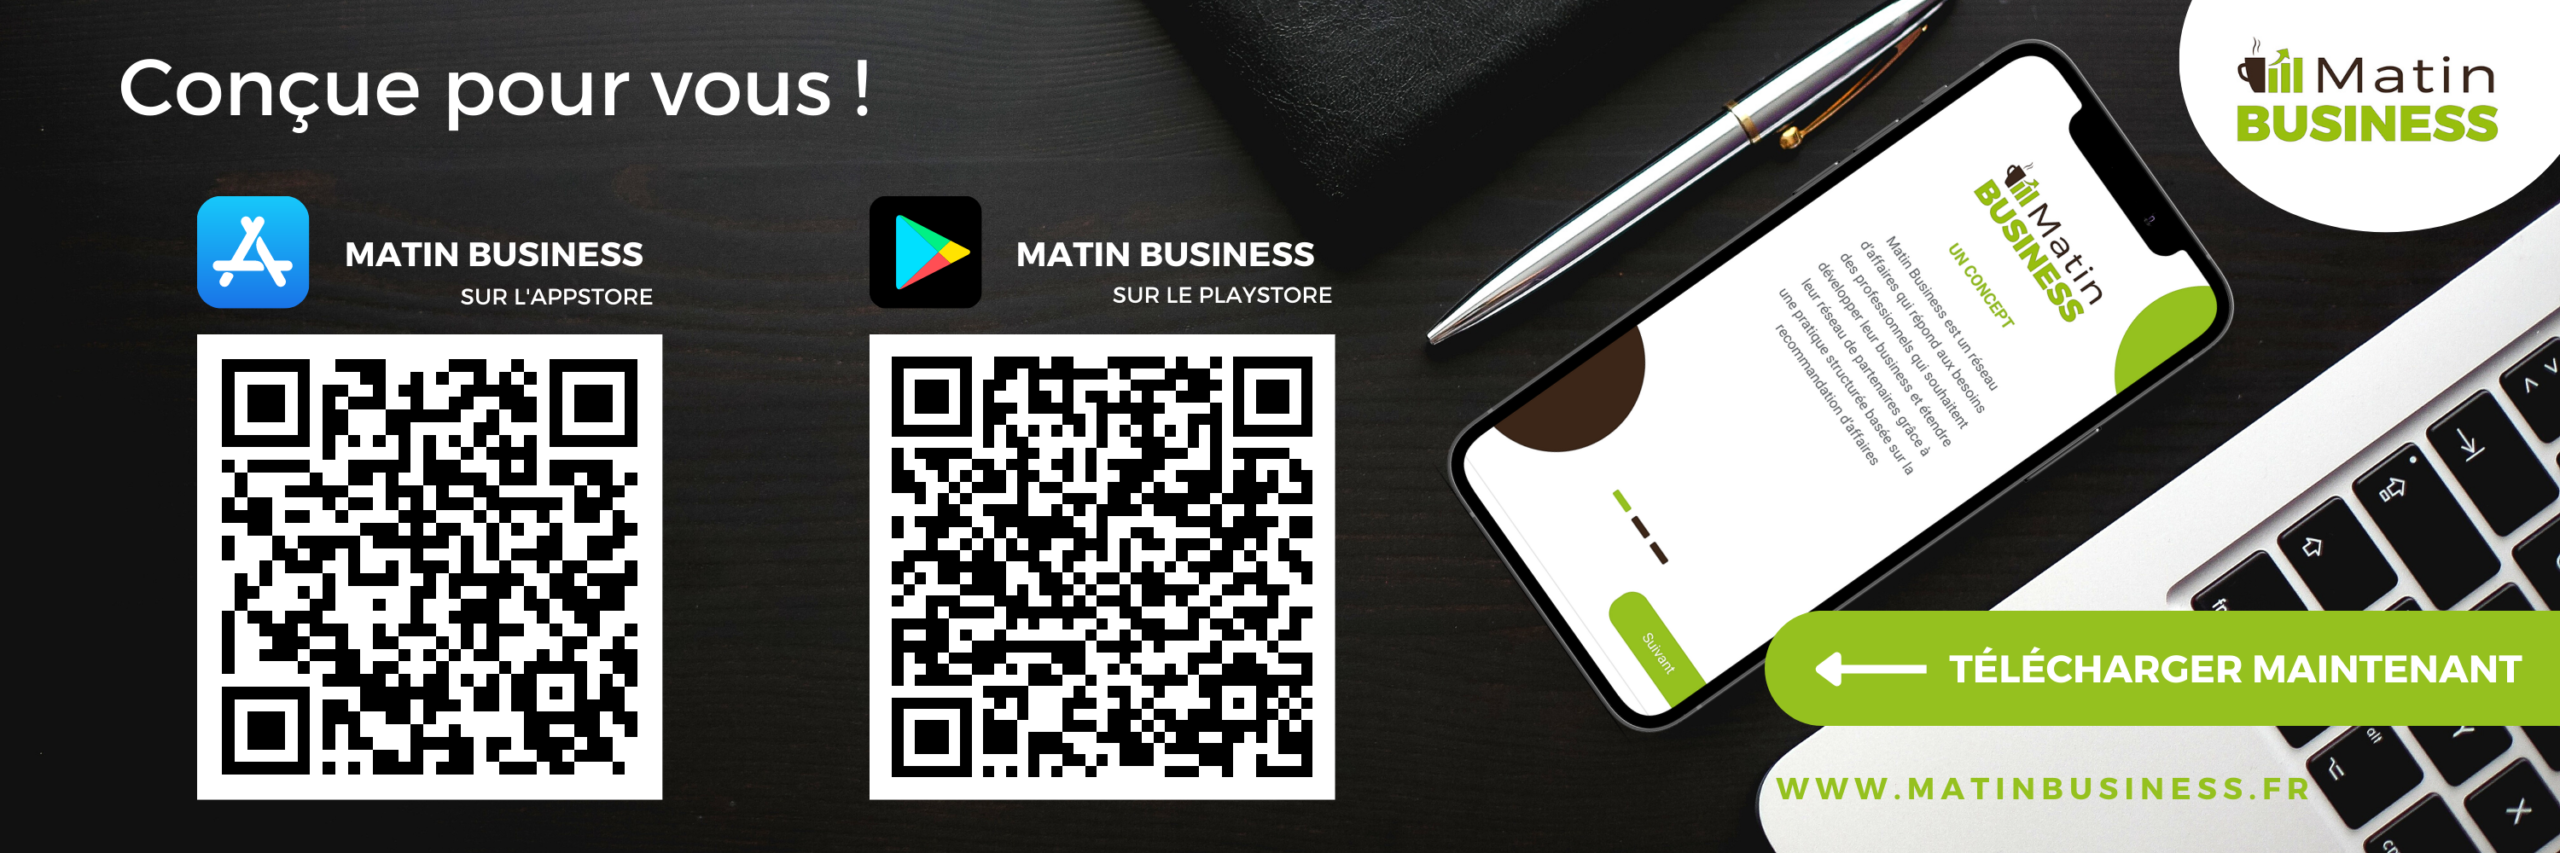 Application mobile Matin Business, réseau d'affaires